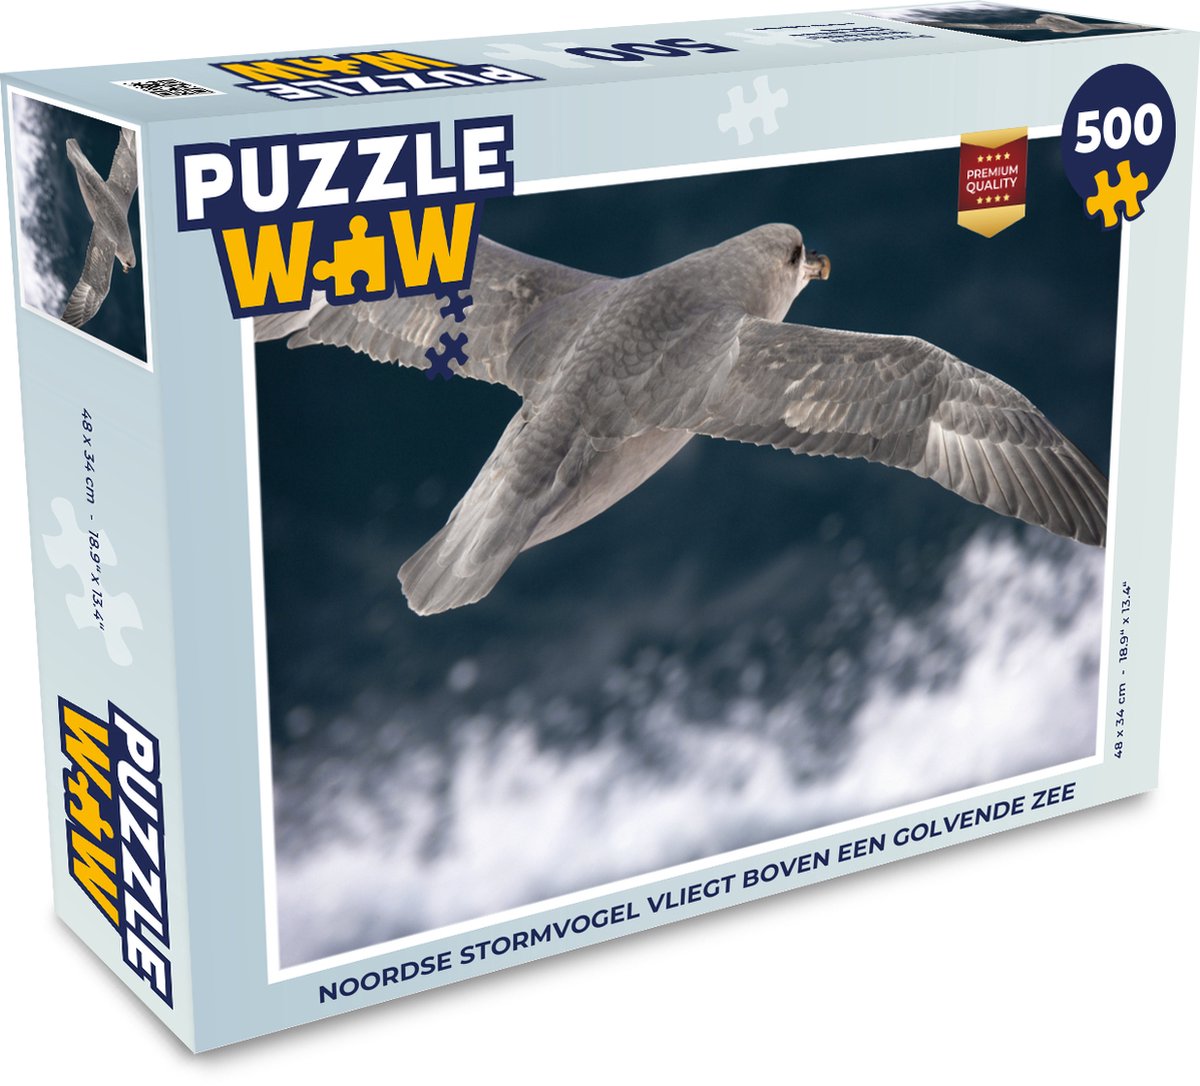 Afbeelding van product Puzzel 500 stukjes Noordse stormvogel - Noordse stormvogel vliegt boven een golvende zee - PuzzleWow heeft +100000 puzzels